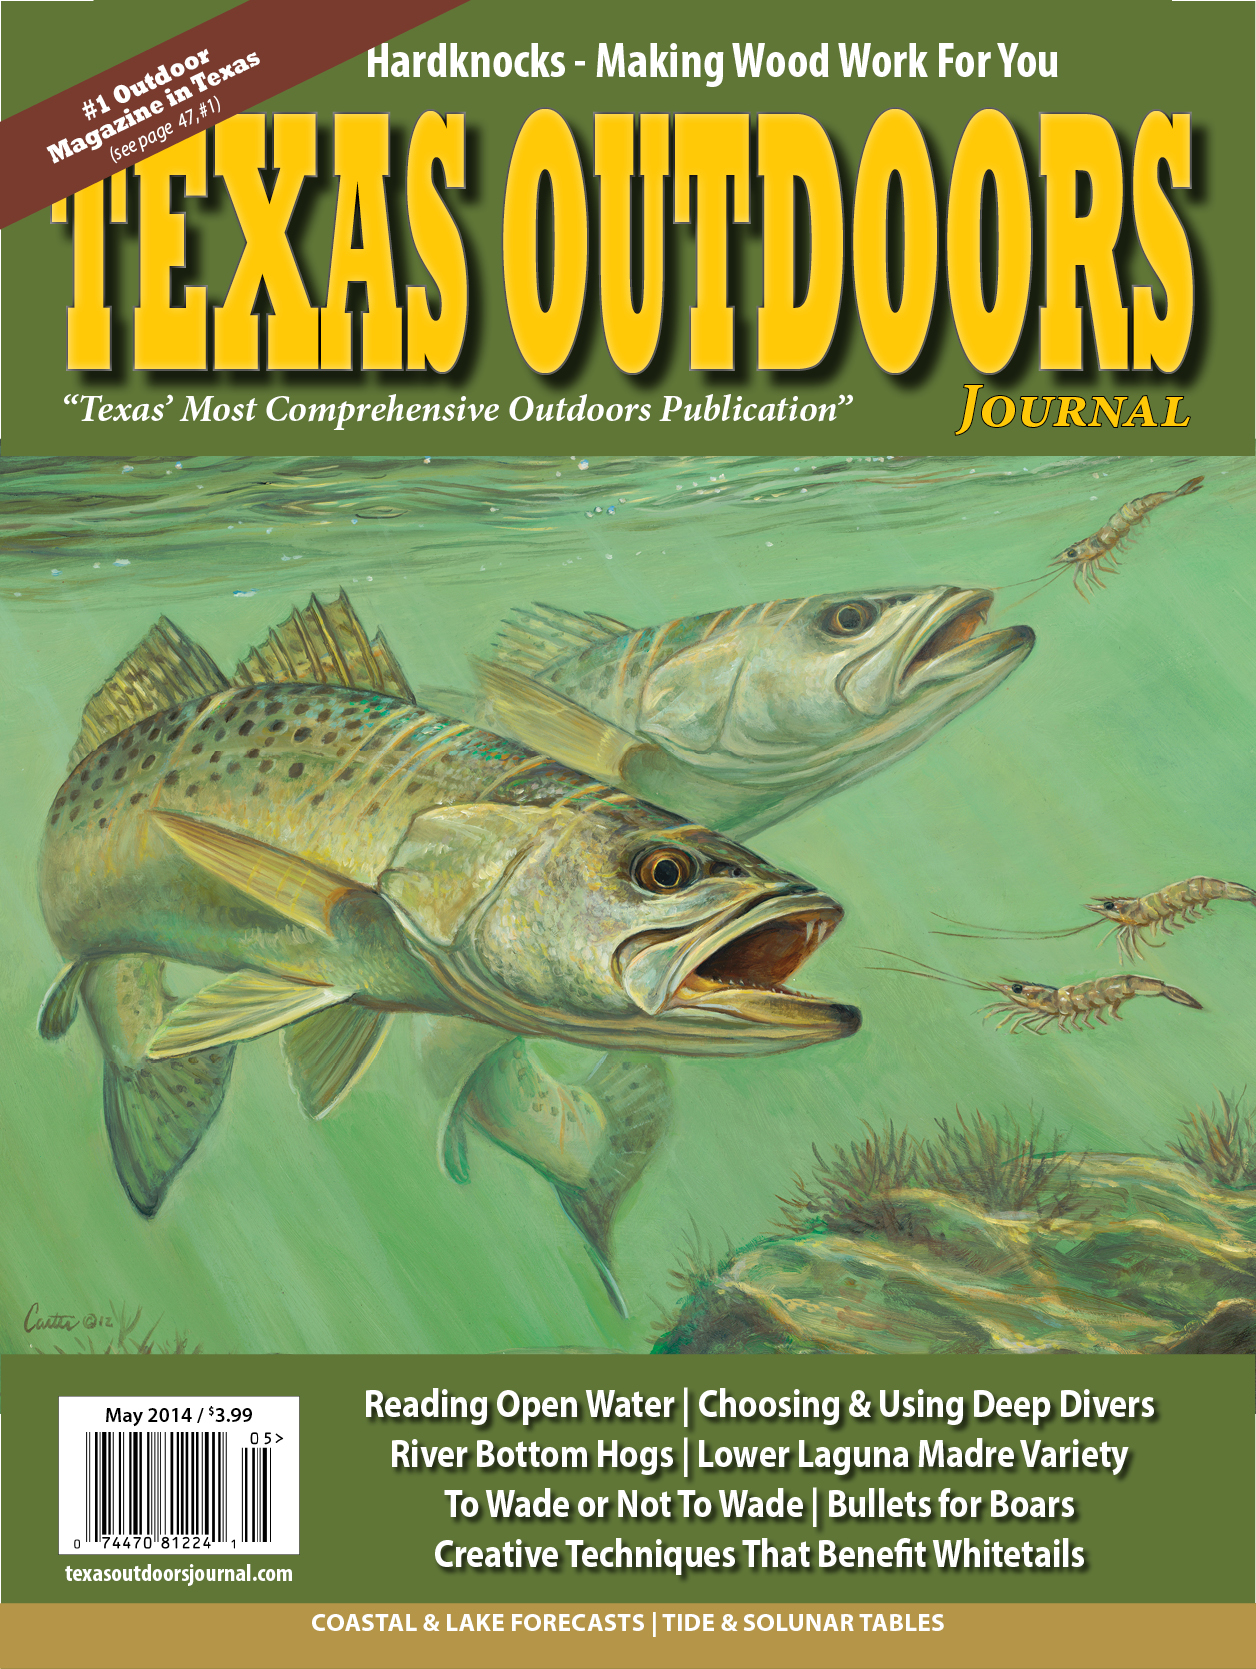 Texas Outdoors Journal